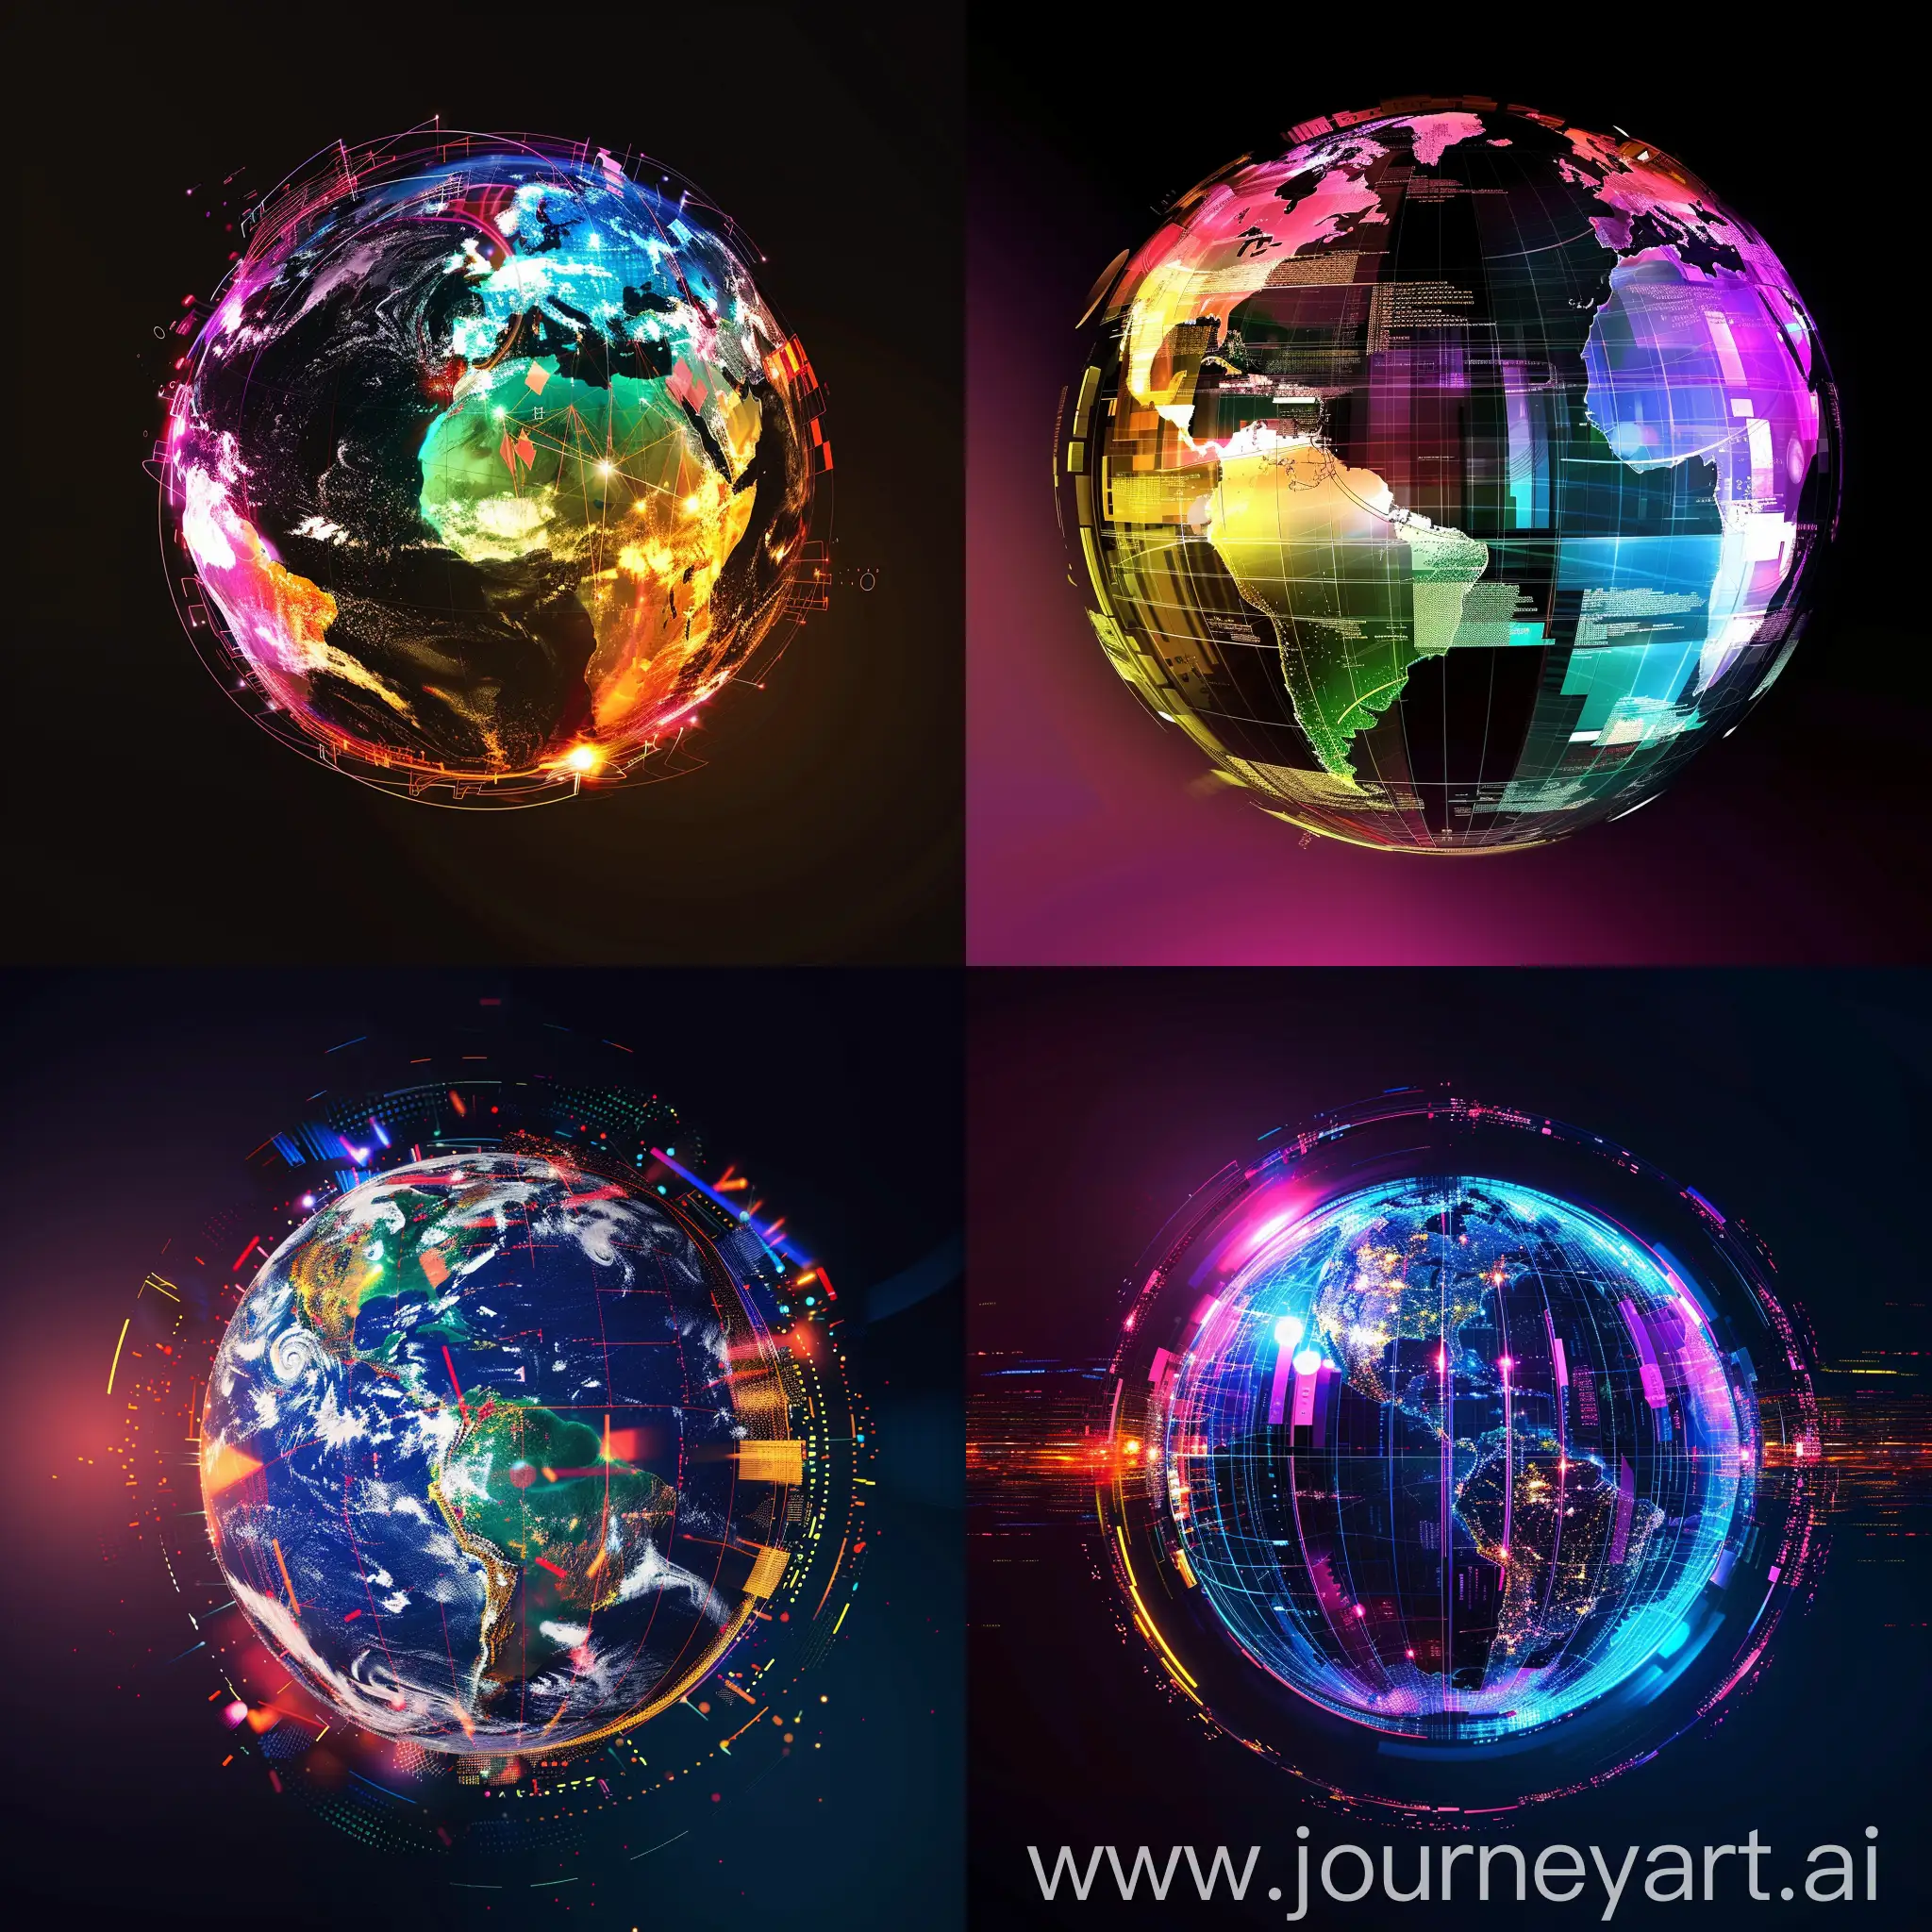 a colorful sleek photo of a digital earth globe 
